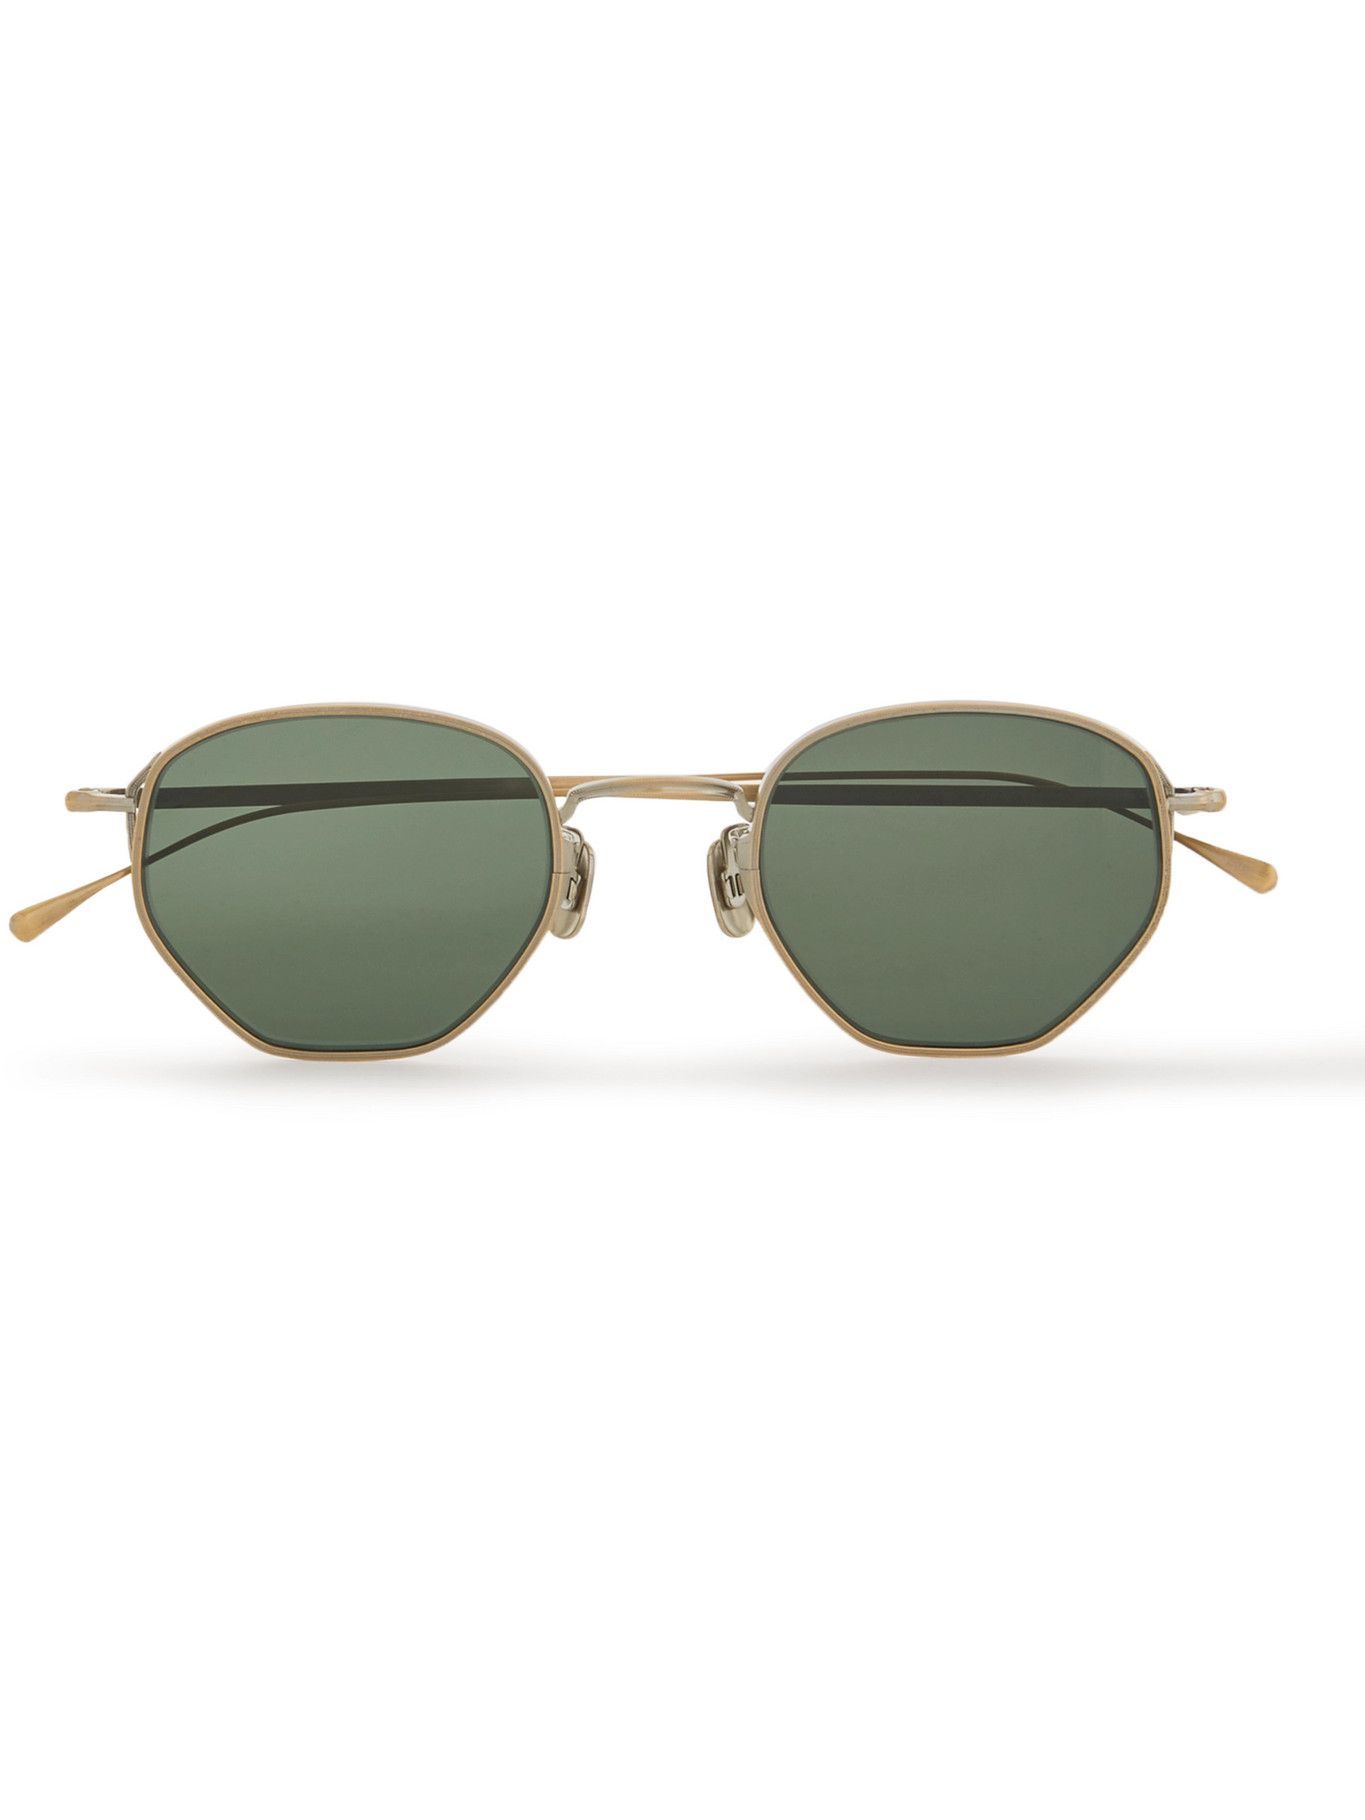 Eyevan 7285 - Round-Frame Gold-Tone Titanium Sunglasses Eyevan 7285